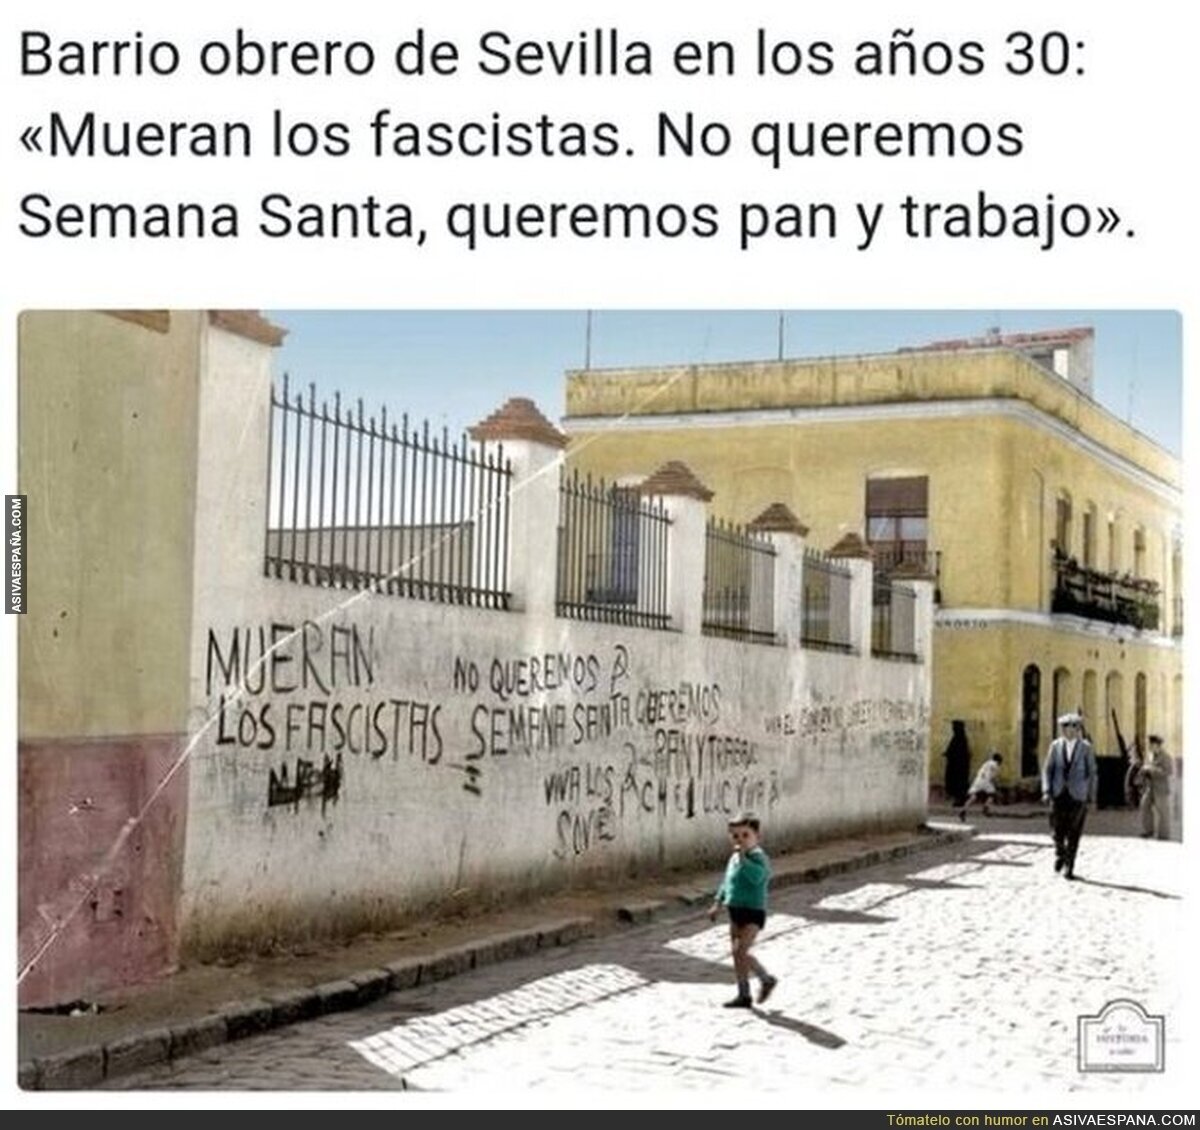 Sevilla sabe bien el mensaje